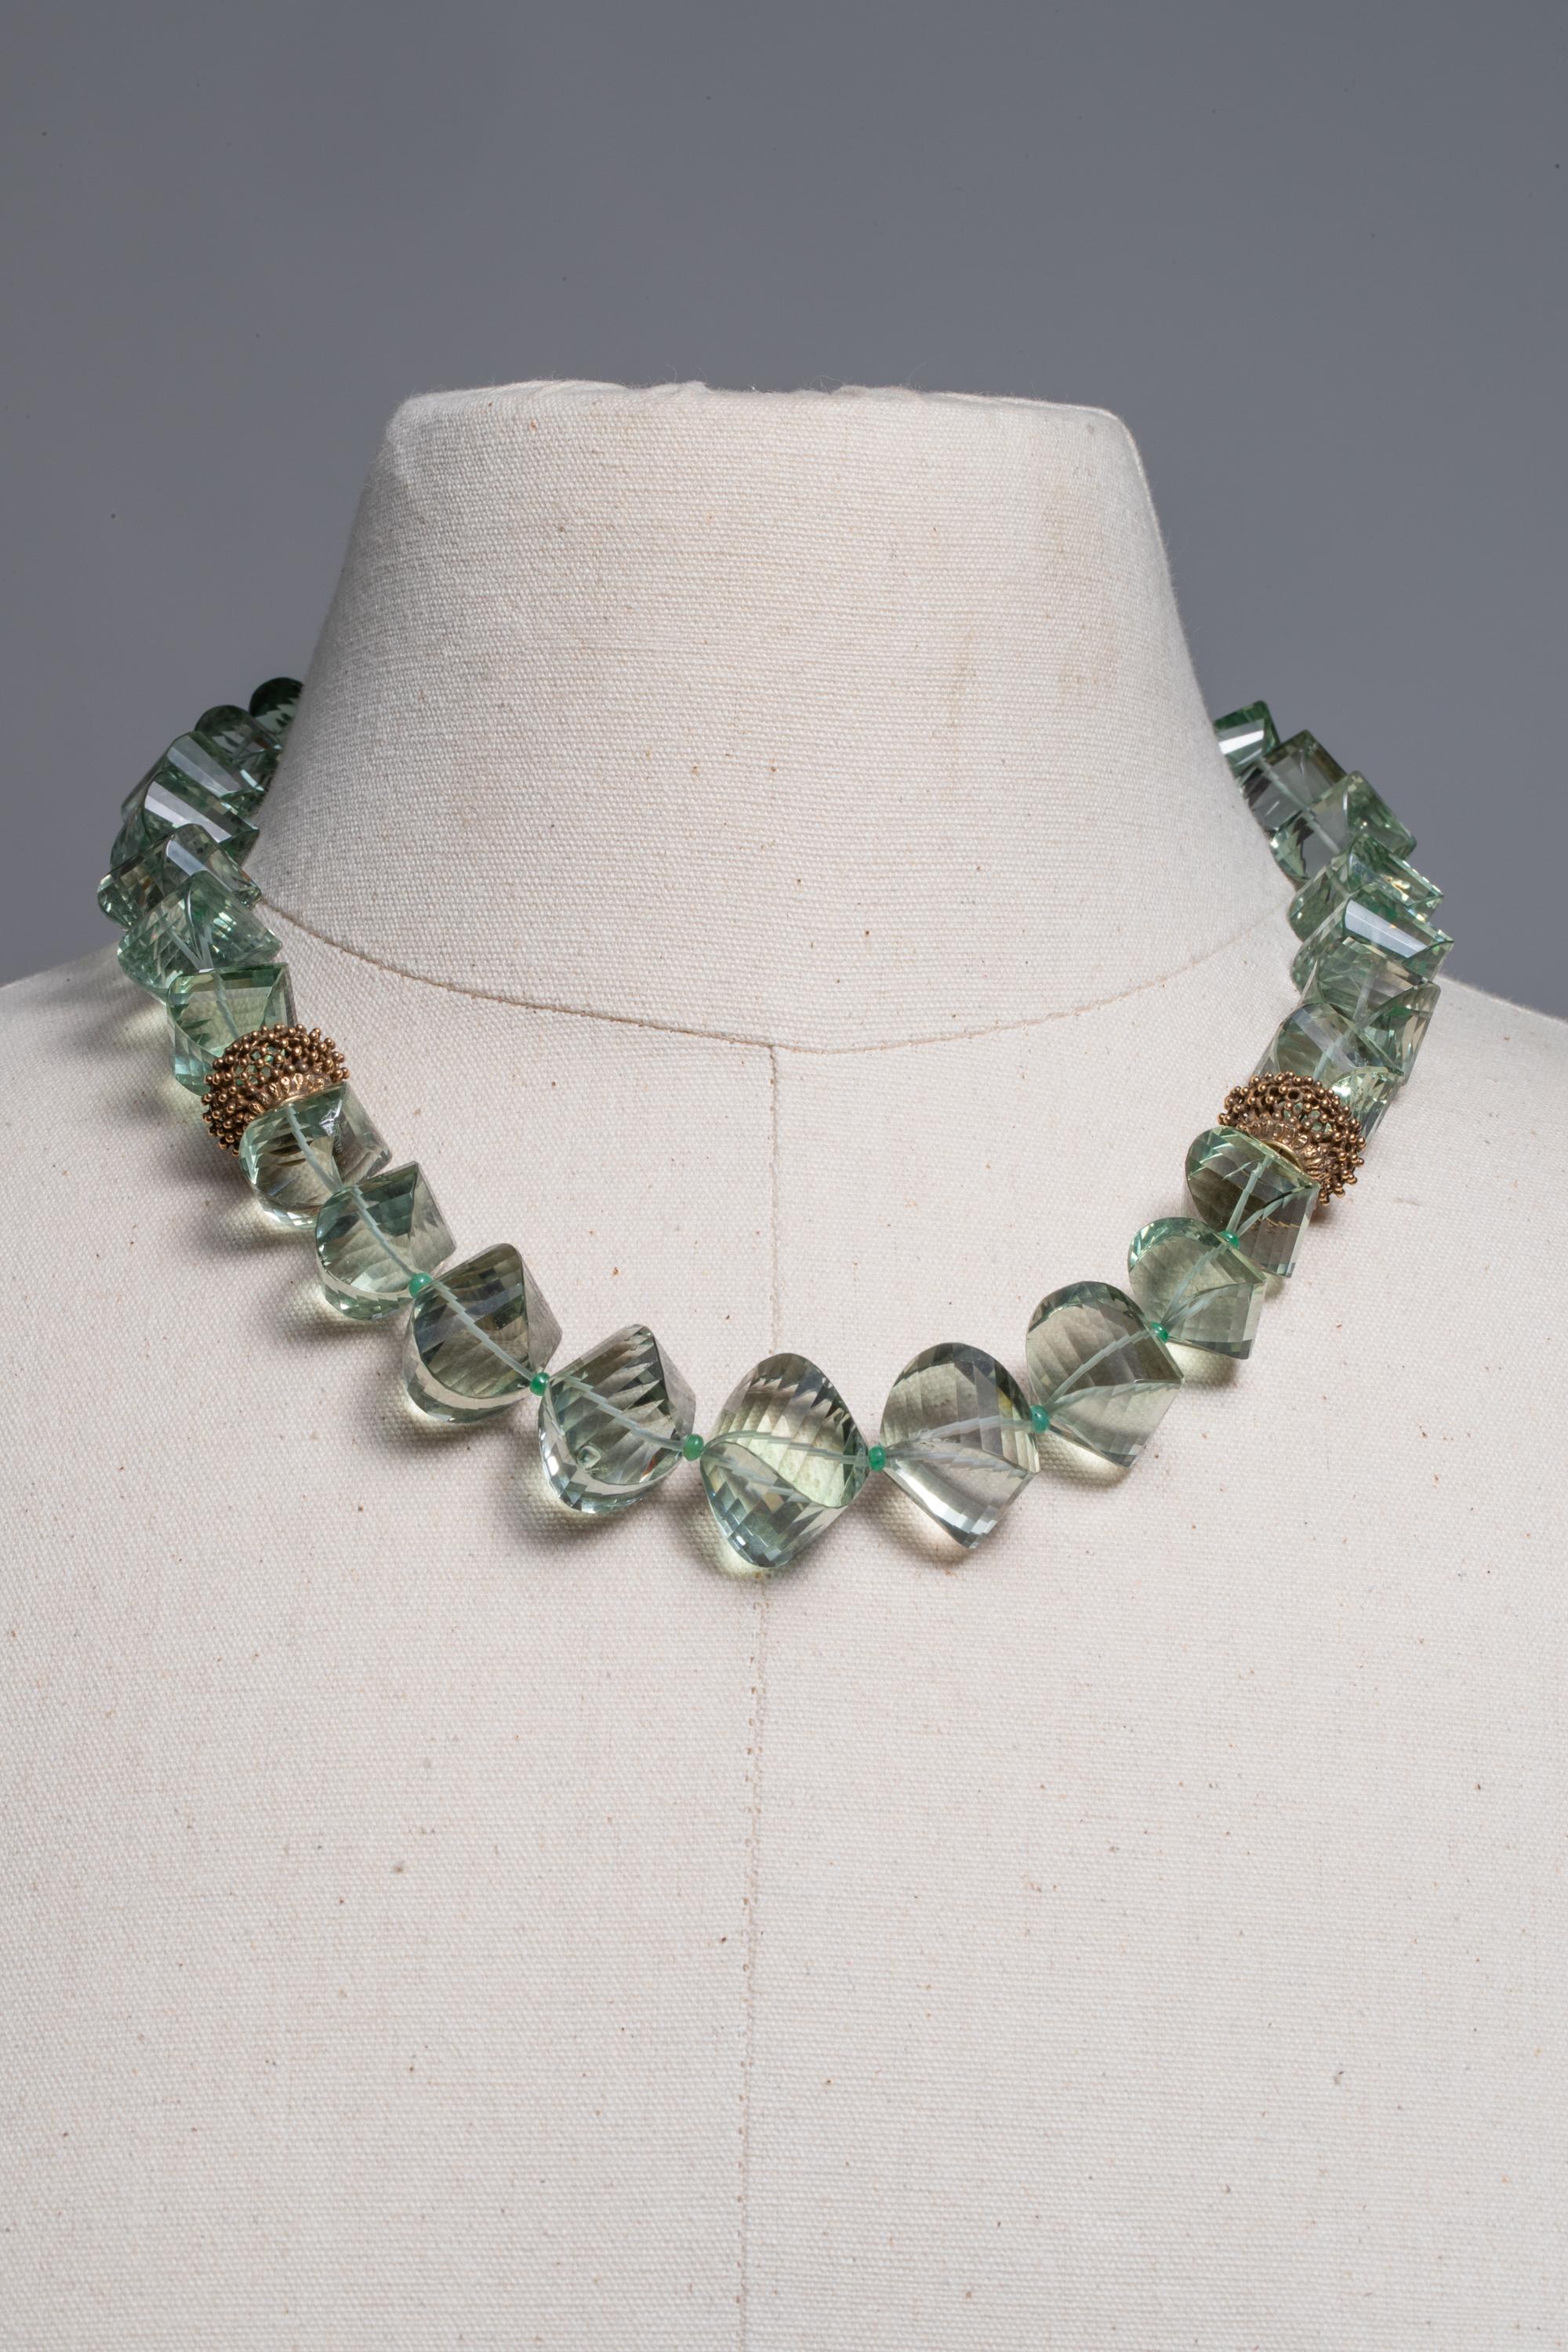 Améthyste verte (prasiolite) facettée et taillée en coussin, magnifiquement ondulée, avec des perles texturées en or 18K au niveau de la clavicule.  Collier de perles légèrement graduées avec des émeraudes entre les deux, avec un fermoir en or 18K